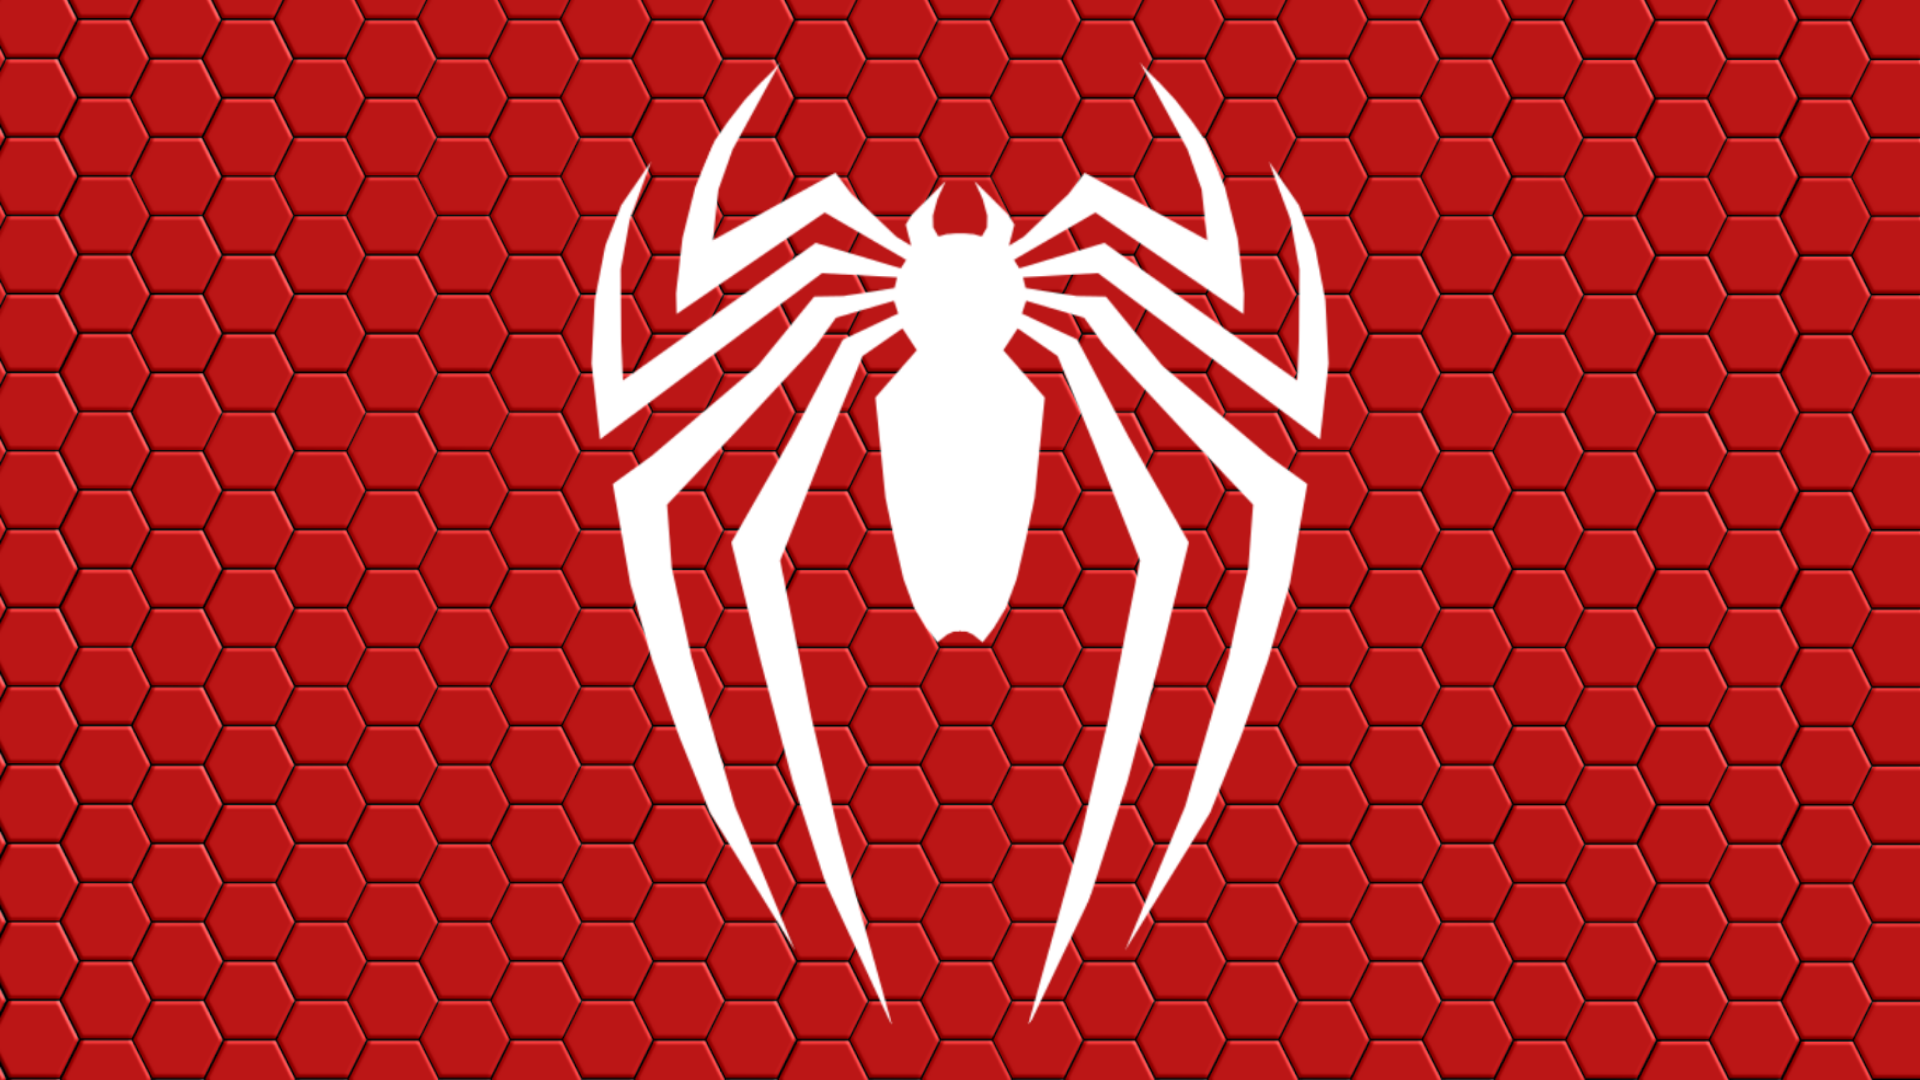 Spider Man Ps4 New Logo Wallpaper 高清壁纸 桌面背景 19x1080 Id Wallpaper Abyss